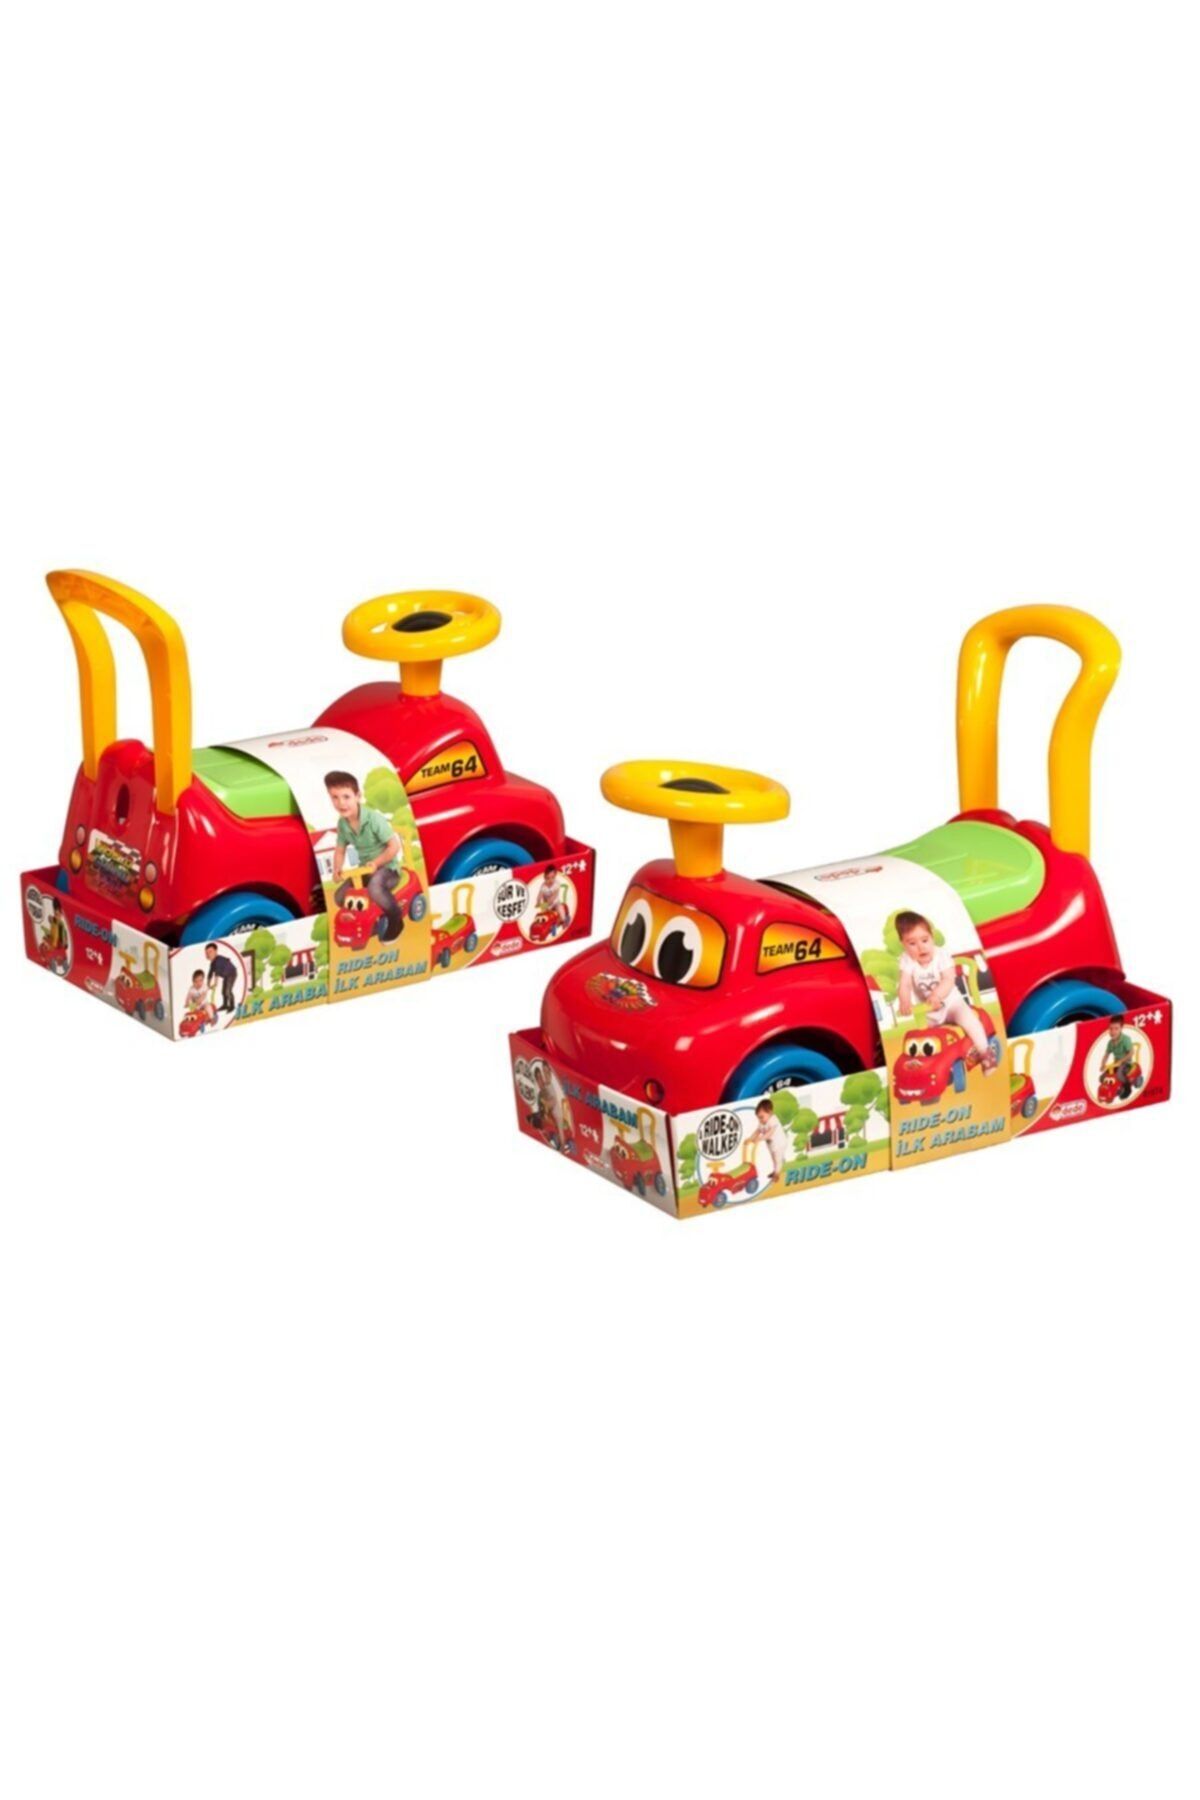 Fen Toys-Dede Dede Oyuncak Ride-on Pedalsız Ilk Arabam 52 Cm